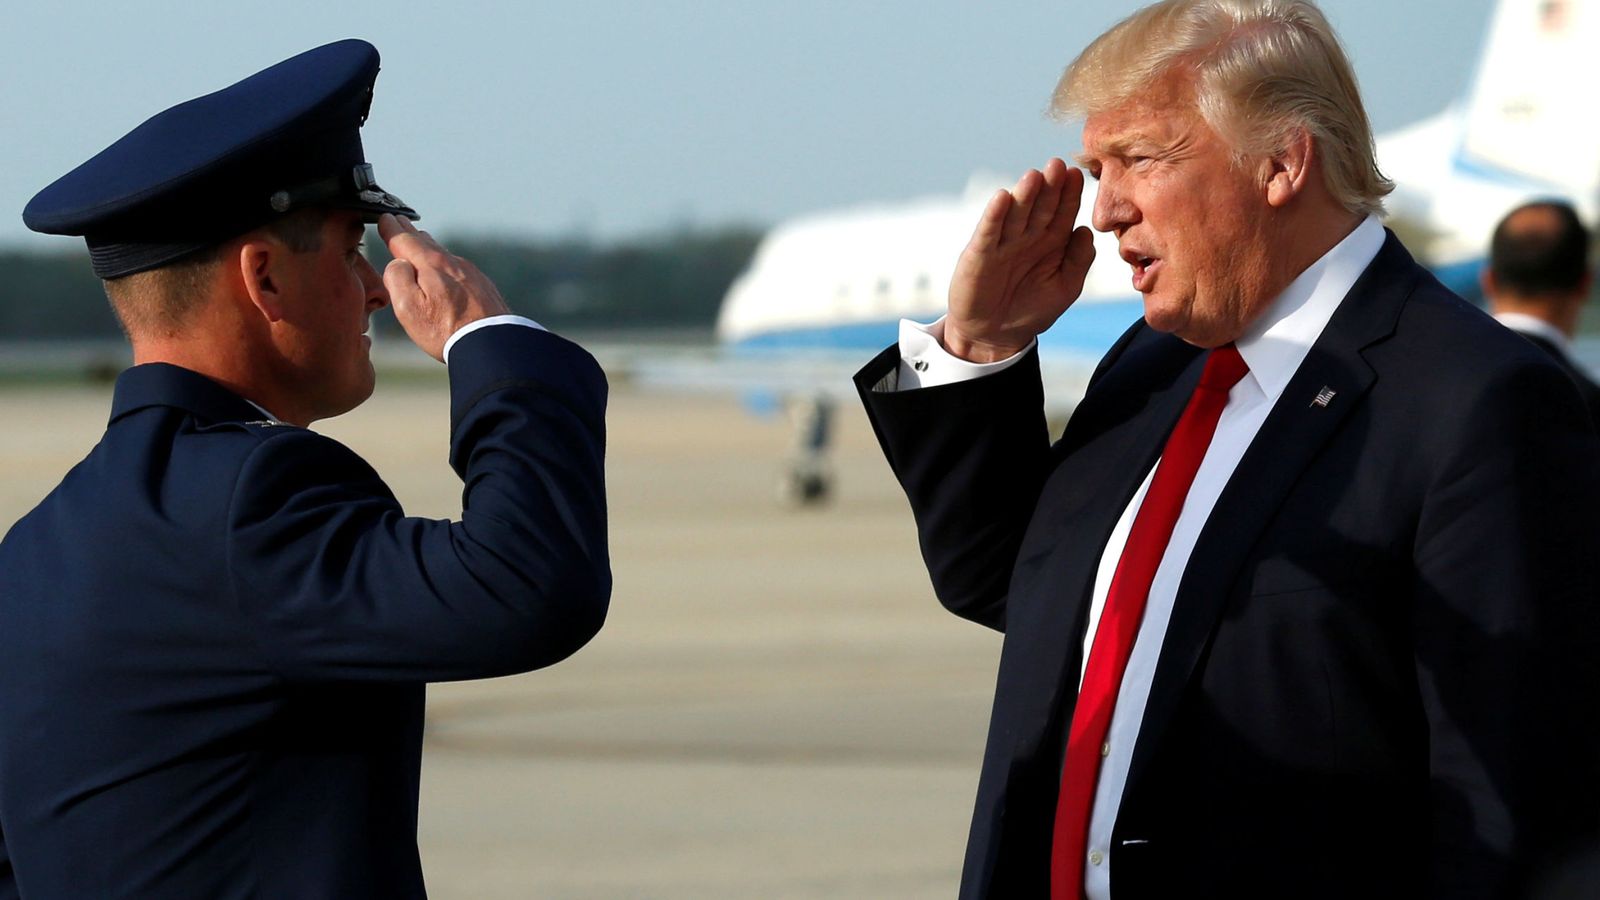 Foto: Donald Trump saluda a un oficial a su llegada a la base Andrews en Washington, el 16 de abril de 2017. (Reuters)